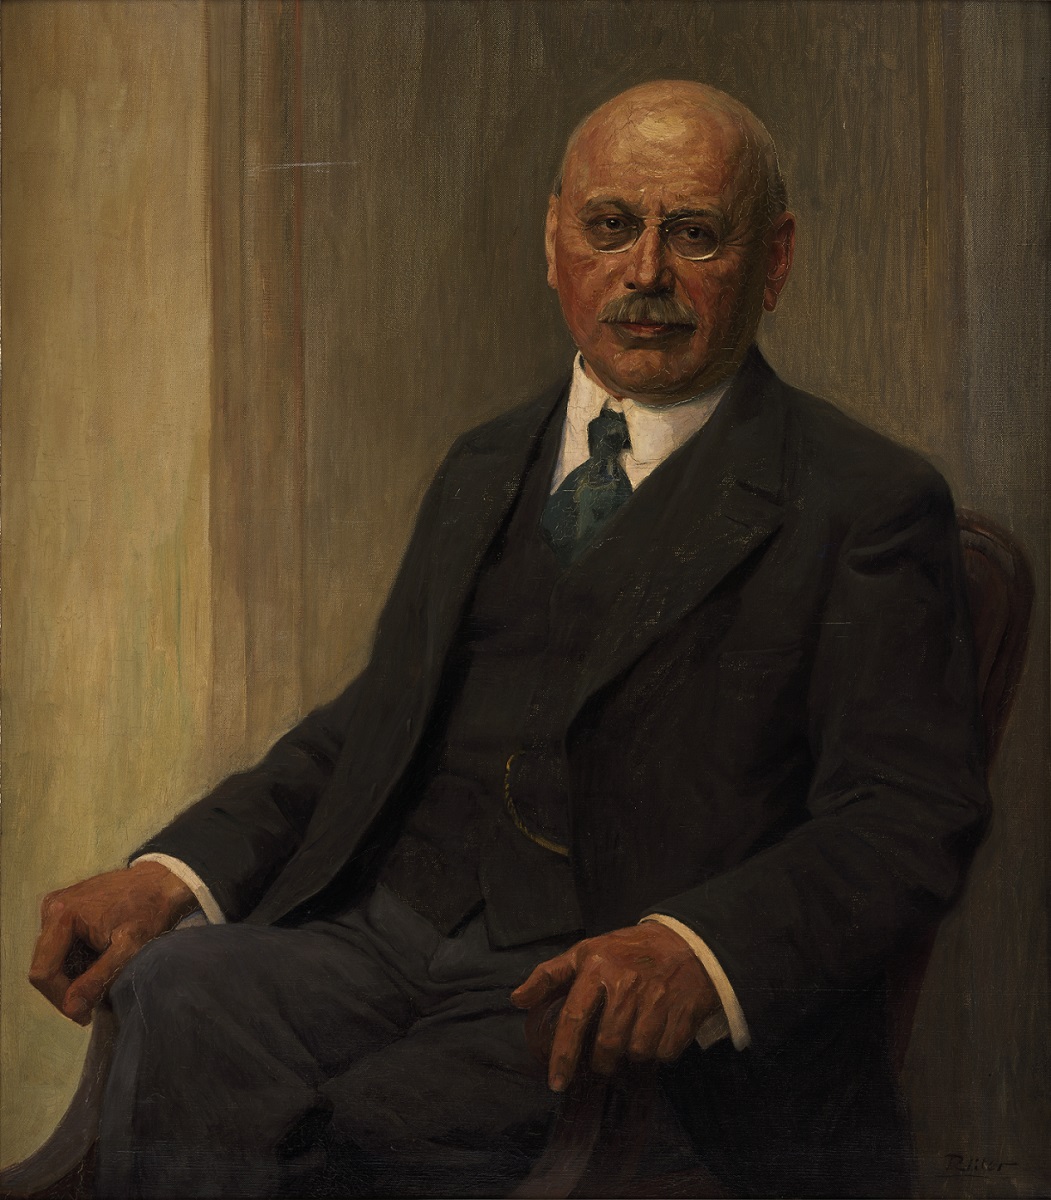  Franz Heinrich Witthoefft, Gemälde (Öl/Leinwand) v. Heinrich Rüter (1877–1955), ca. 1926, Quelle: Handelskammer Hamburg, Bildarchiv Nr. 1.